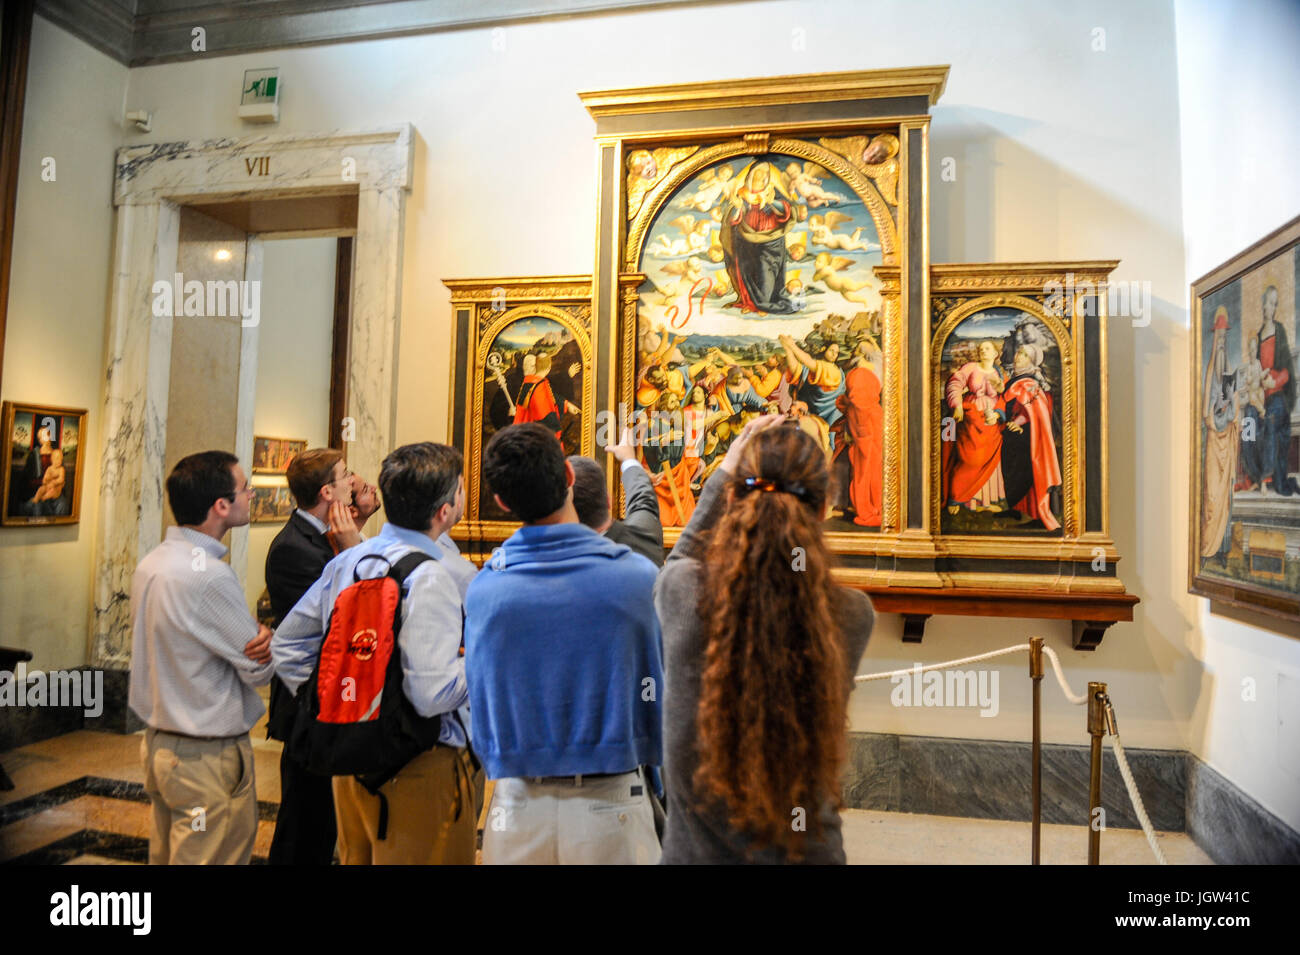 Les touristes admirant l'Assomption de la Vierge (Nicola Filotesio) dans la Pinacothèque des Musées du Vatican. Musei Vaticani, Rome Italie. Banque D'Images